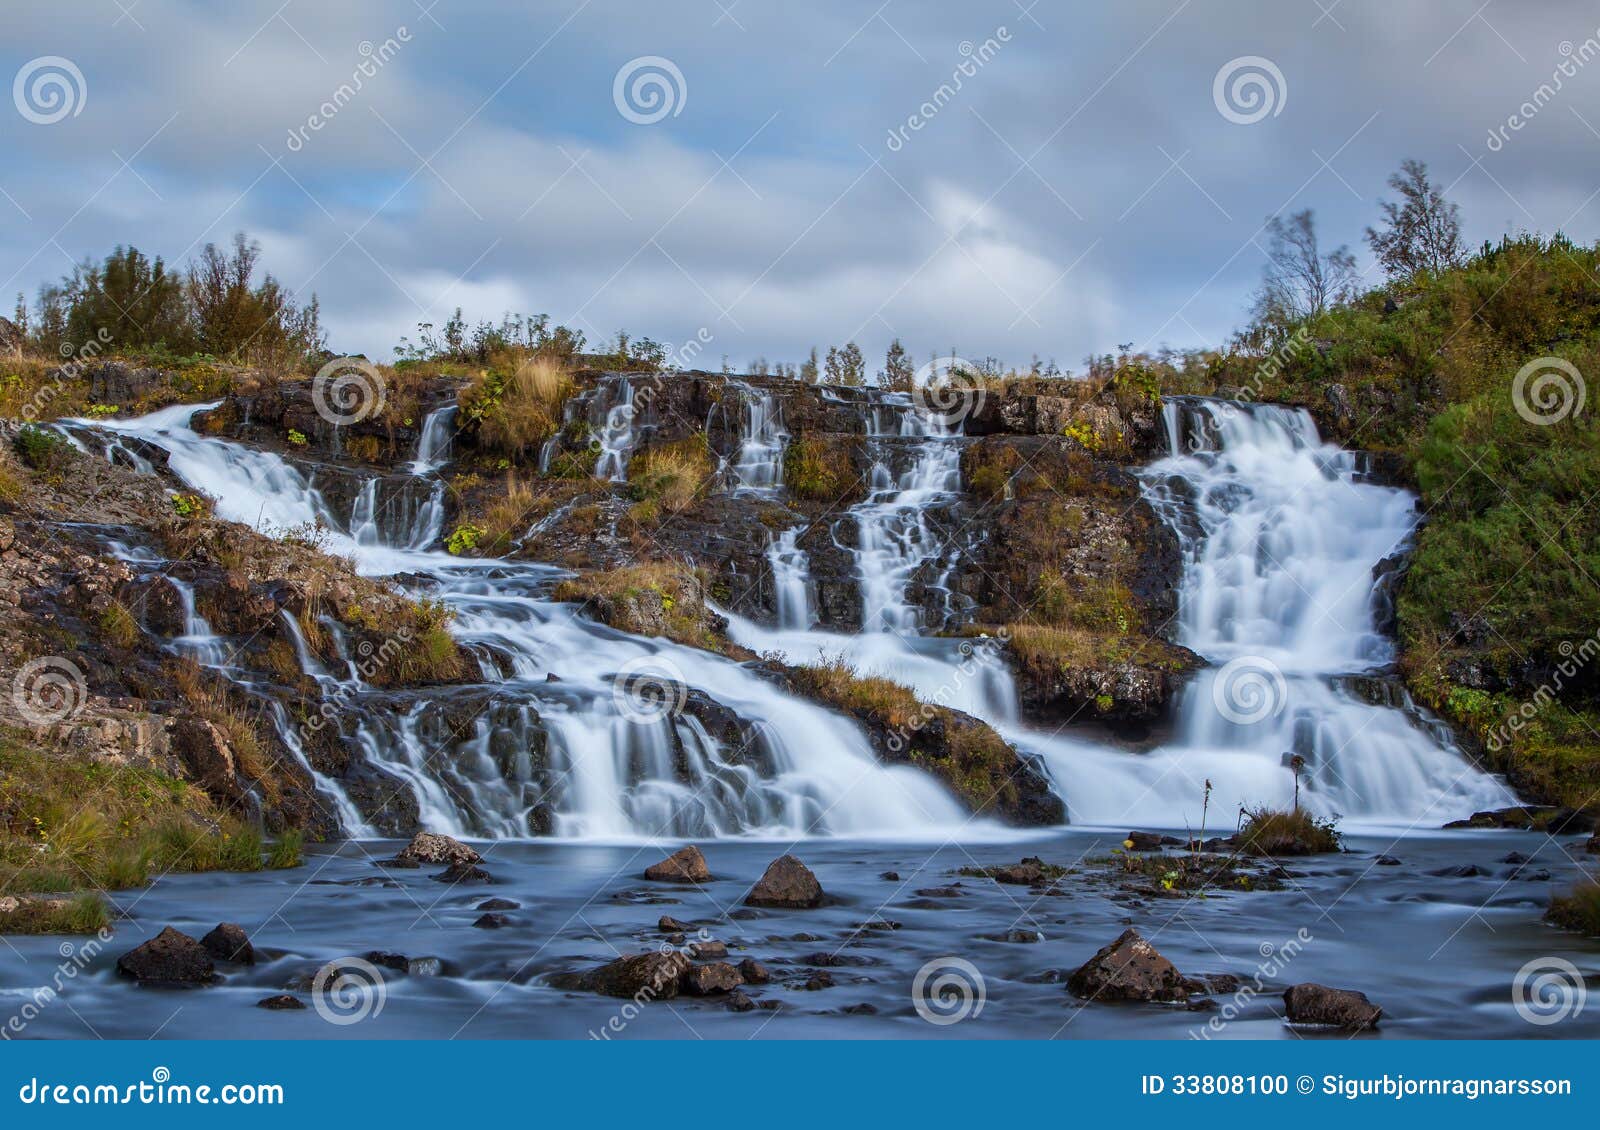 waterfall, reykjavik